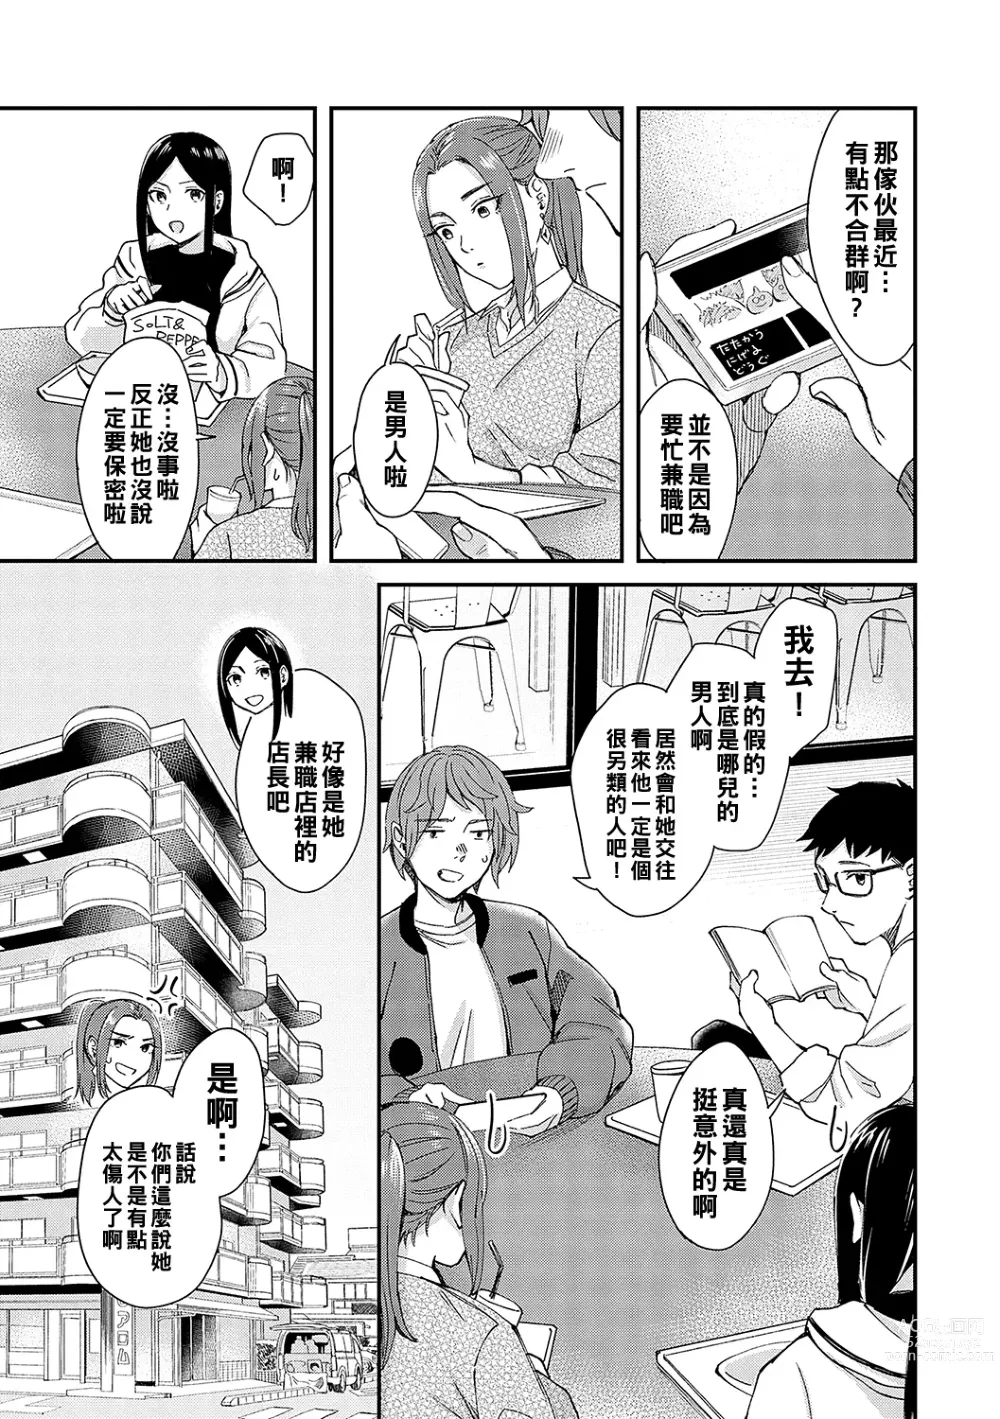 Page 5 of manga Kimi wa Tennenshoku